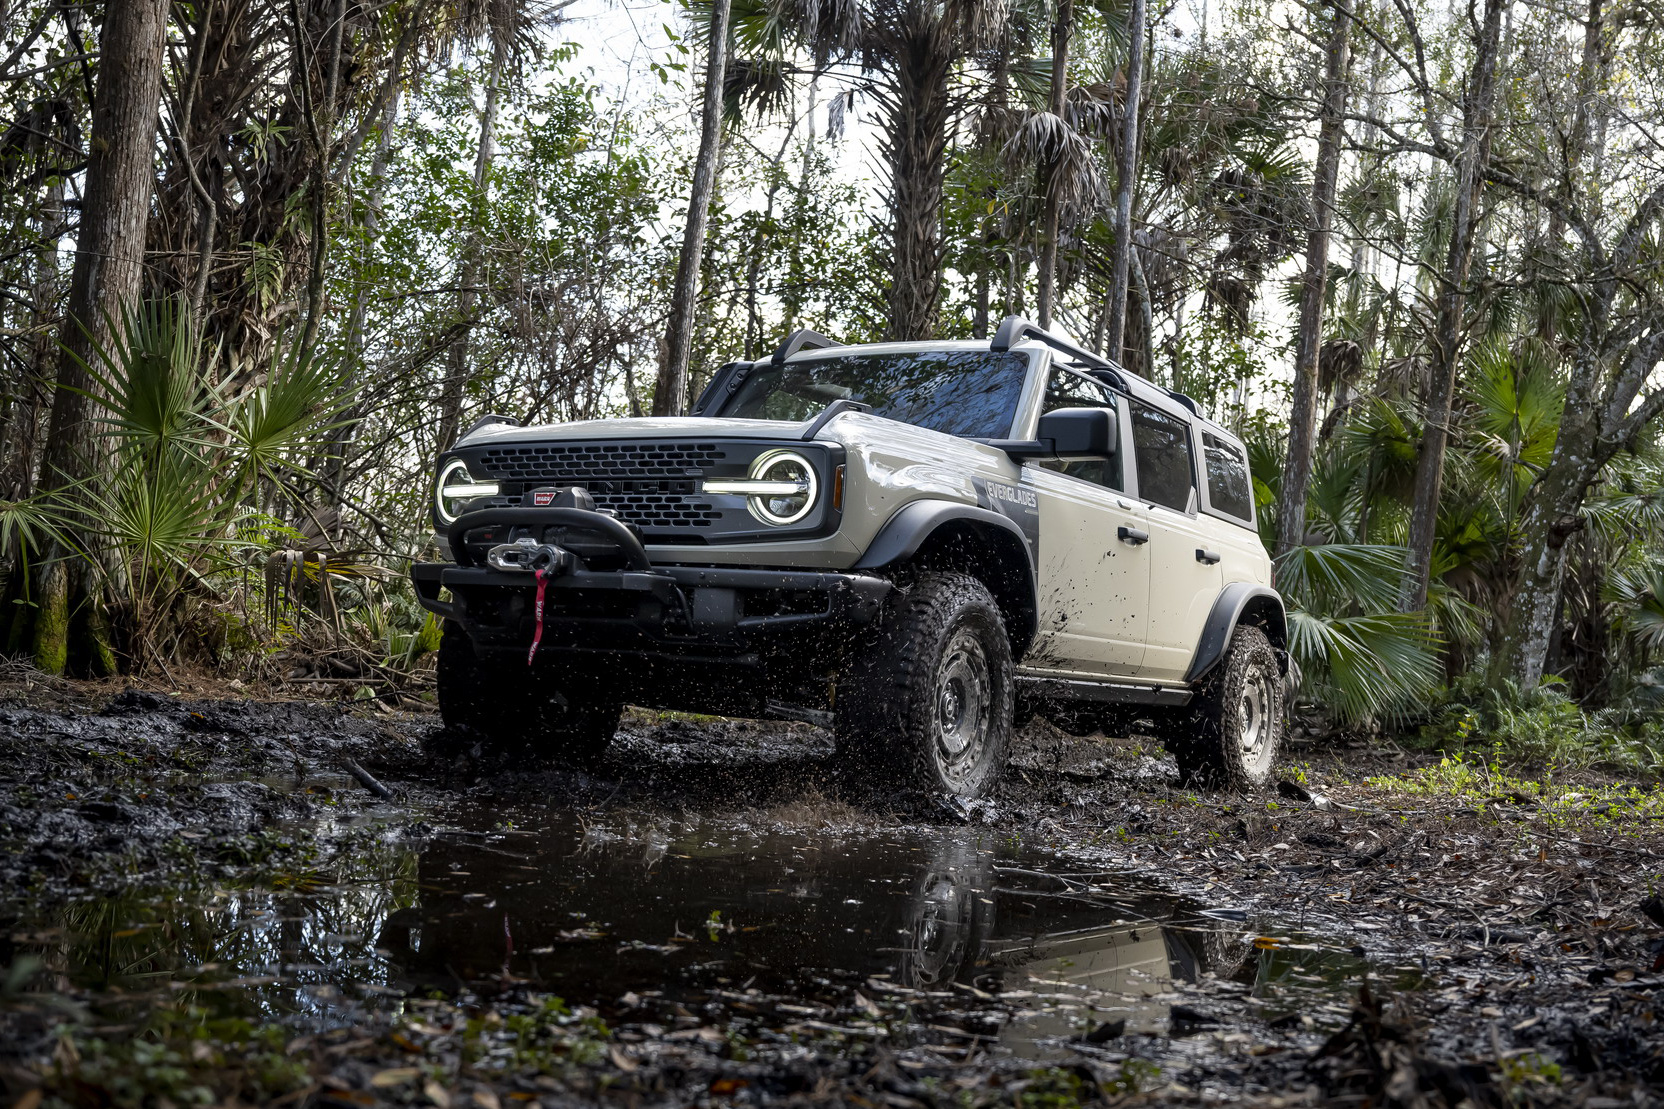 Ra mắt Ford Bronco Everglades - SUV cỡ nhỏ dành cho dân mê off-road giá quy đổi 1,2 tỷ đồng